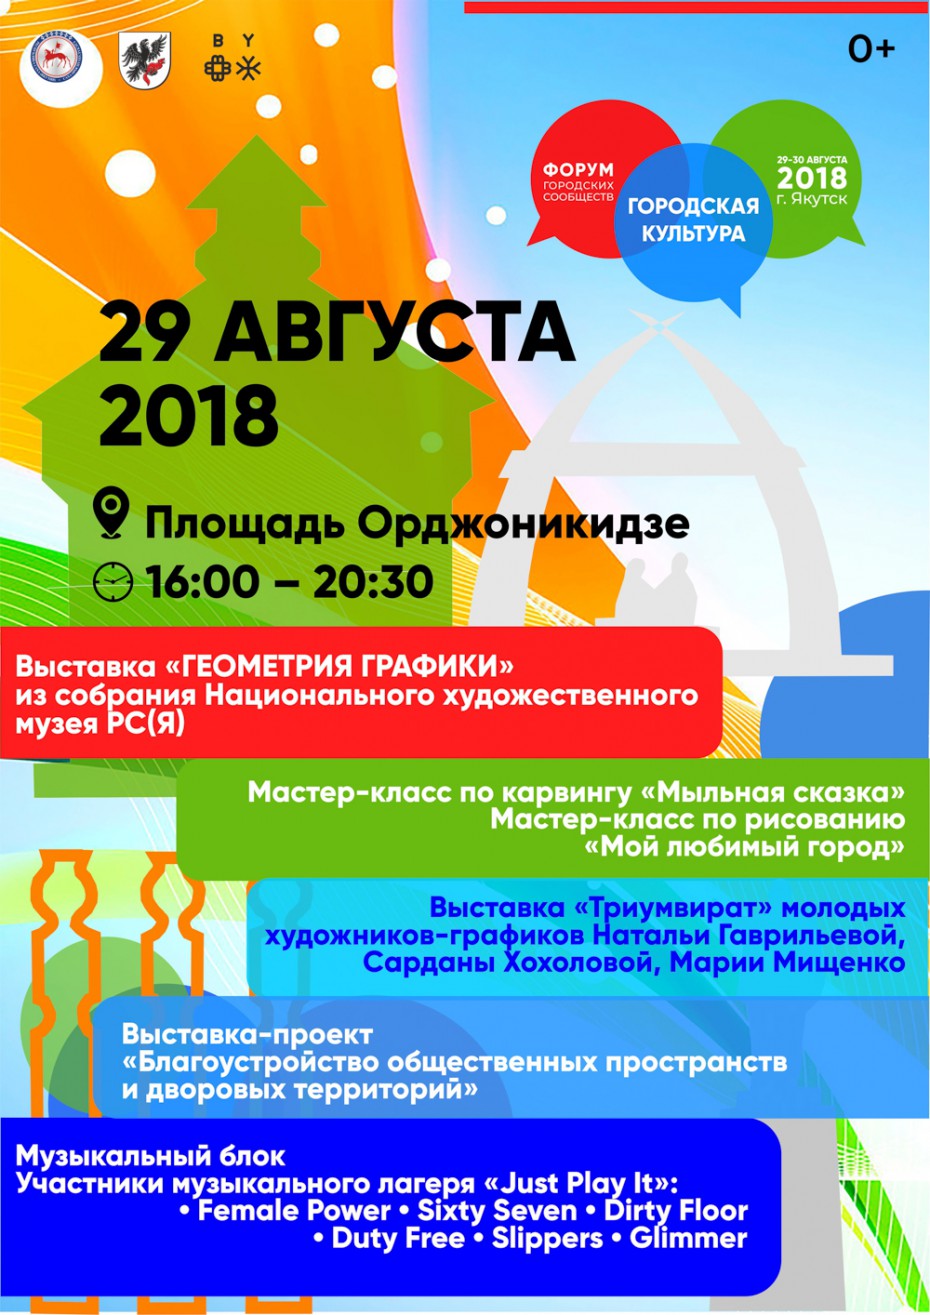 Форум городской культуры в Якутске